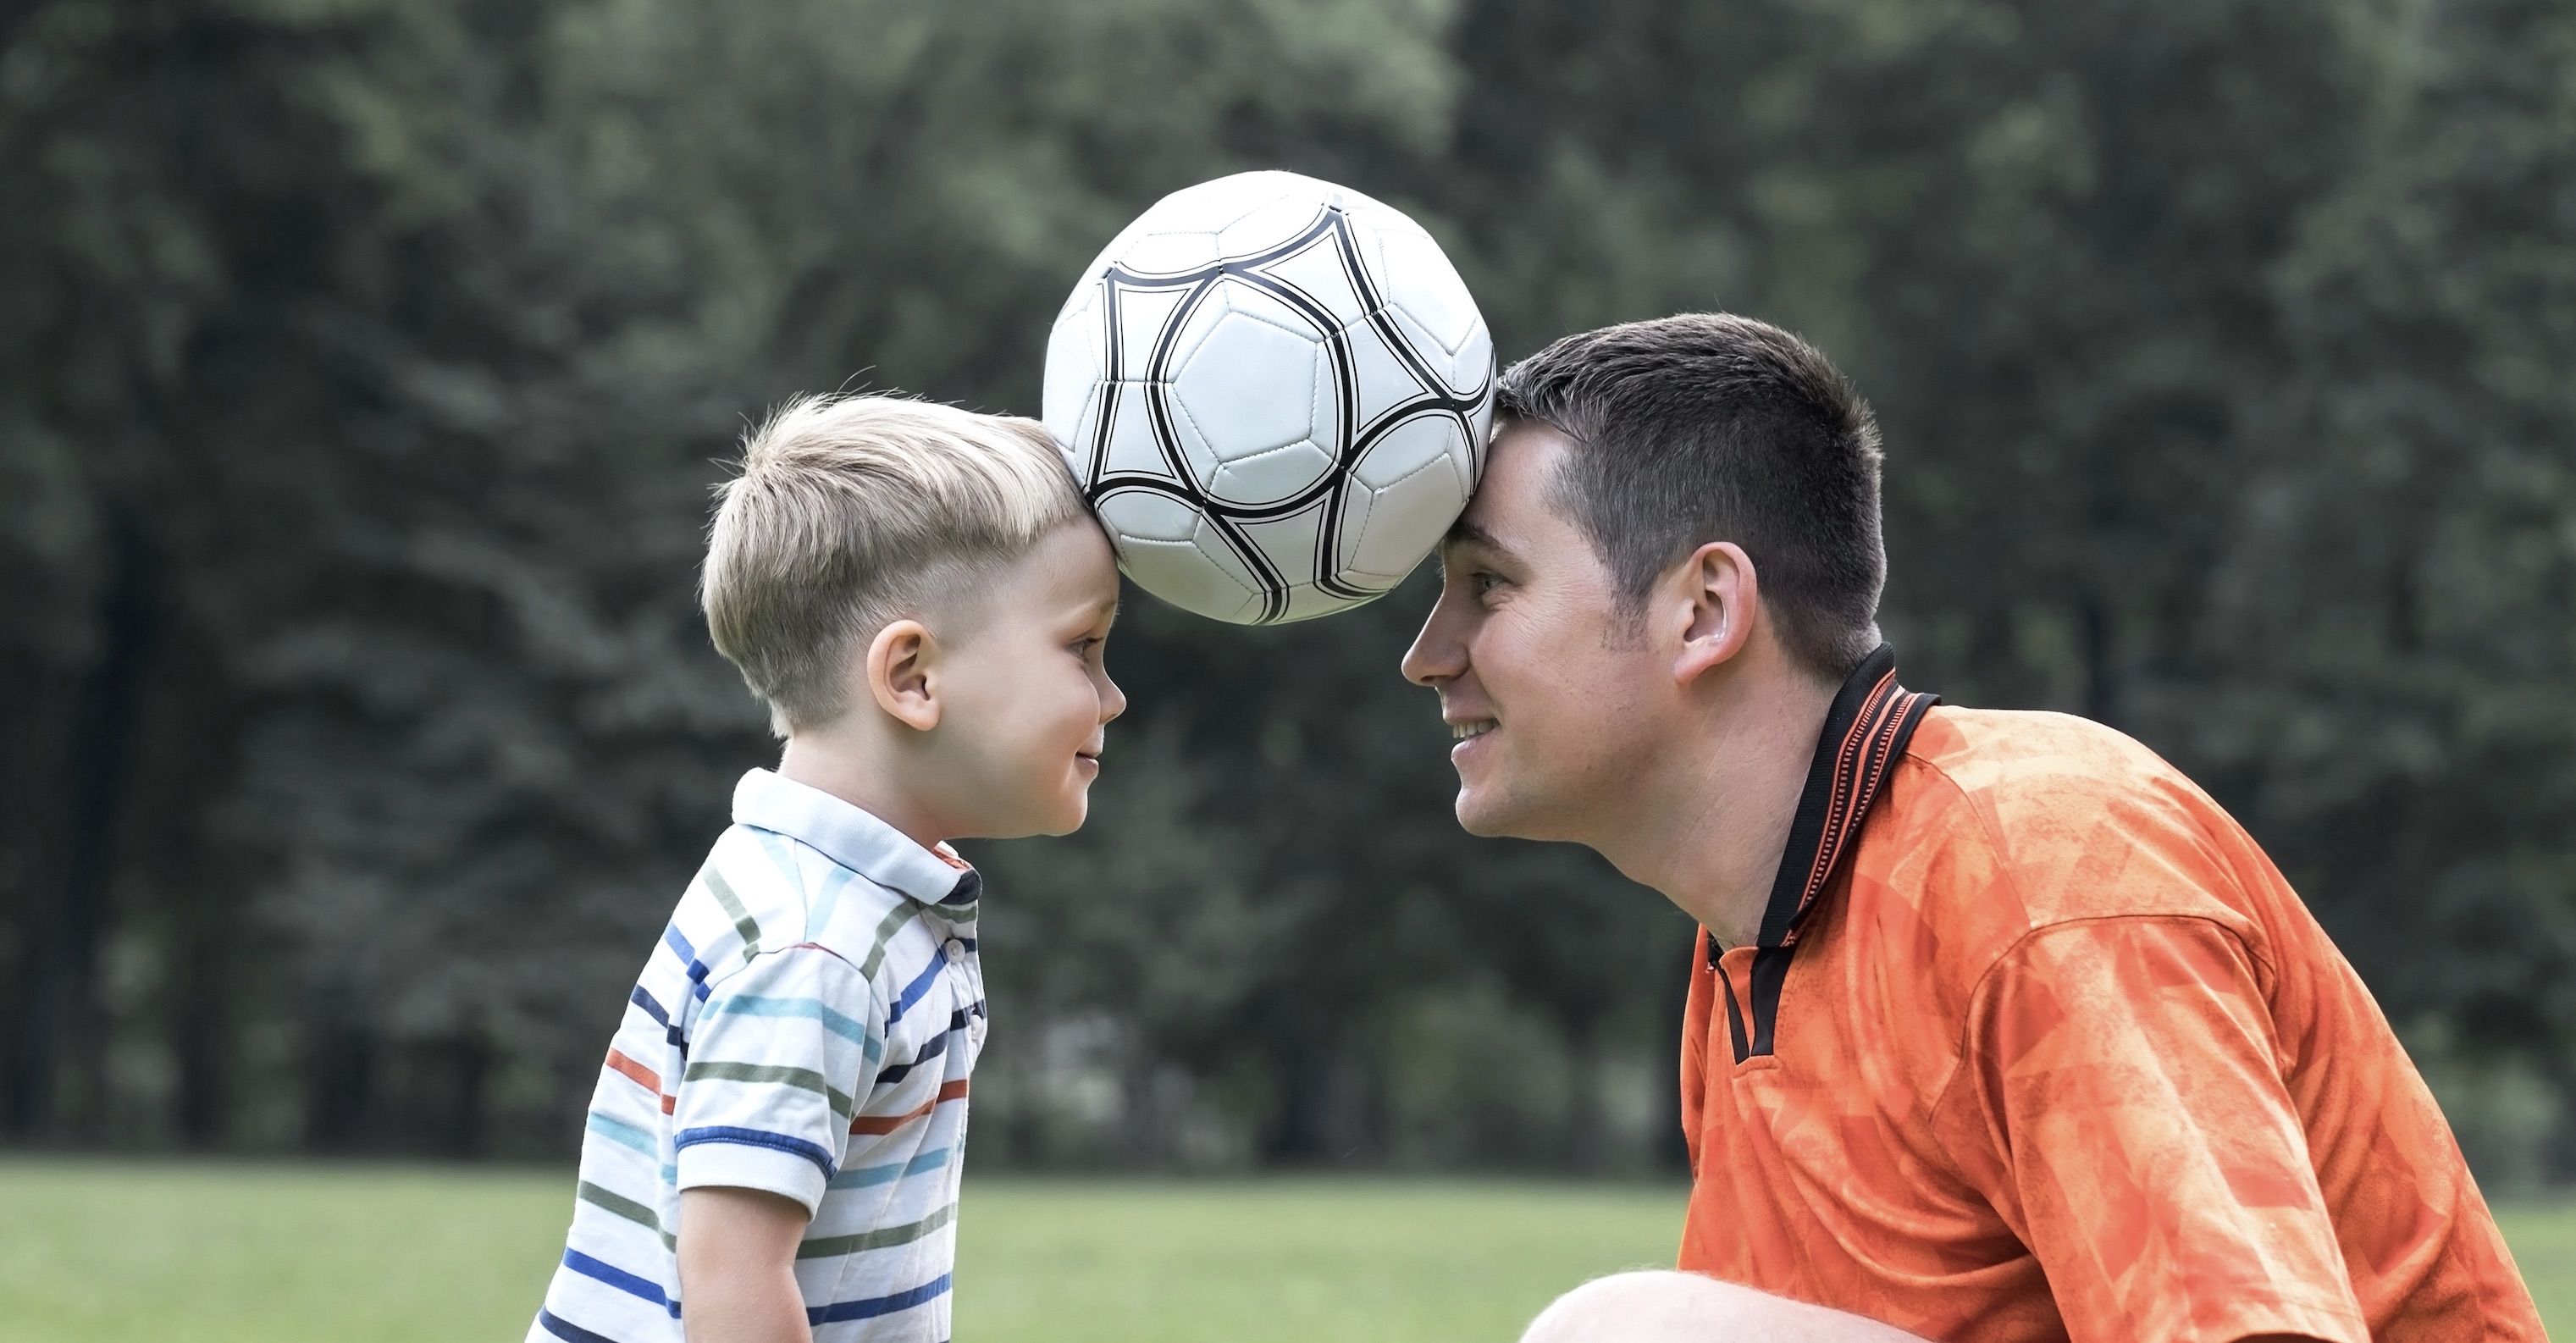 Папа play играет. Футбол с сыном. Дети играют в футбол. Фотосессия сын футбол. Папа и сын футбол.